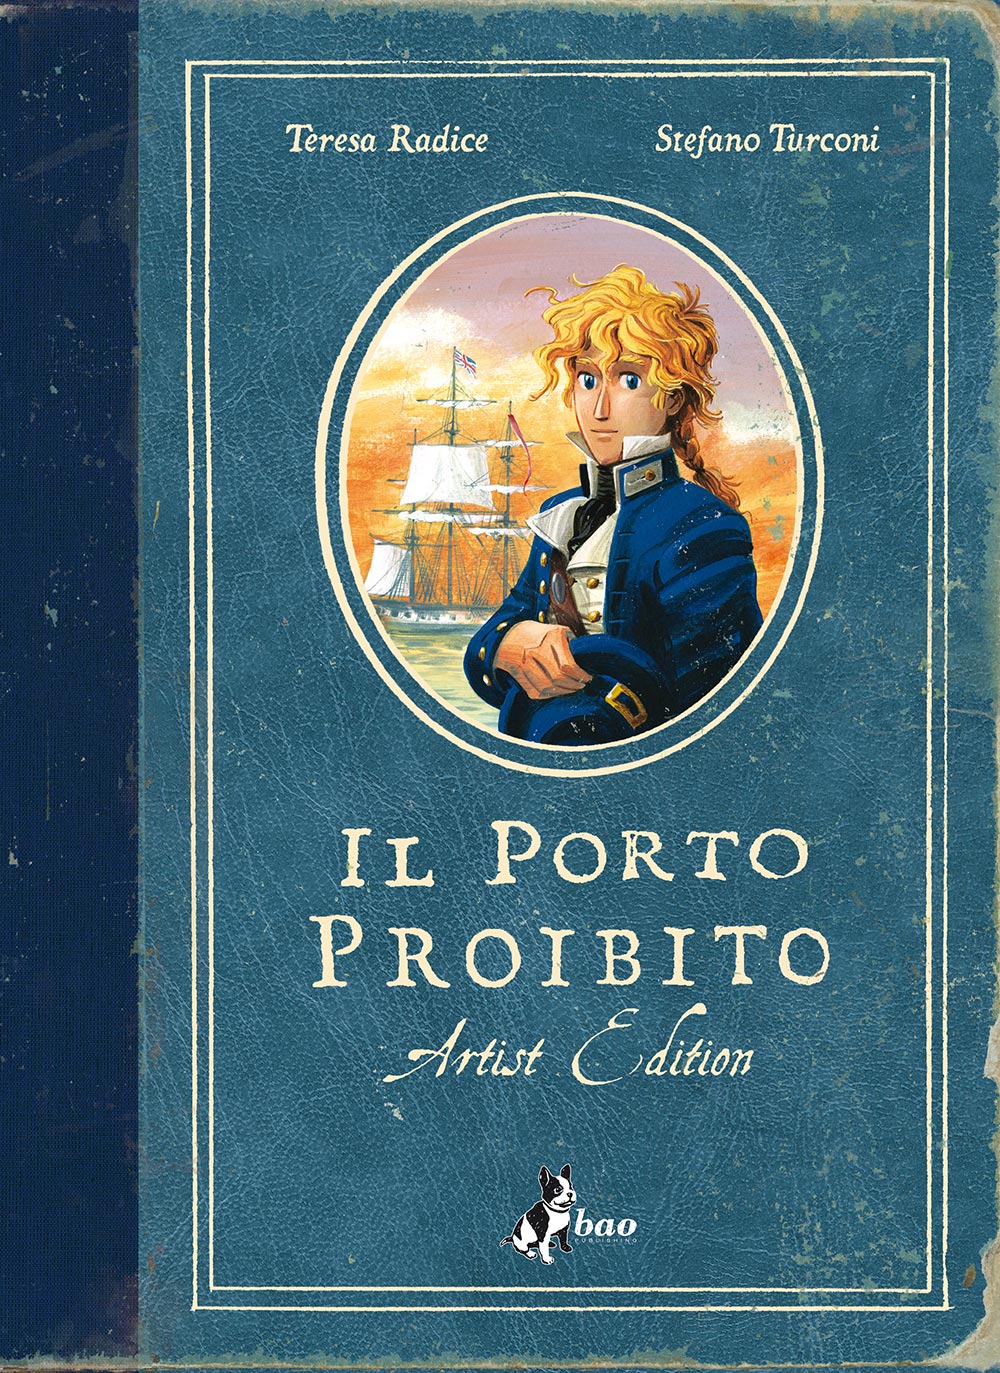 Teresa Radice / Stefano Turconi - Il Porto Proibito. Artist Edition